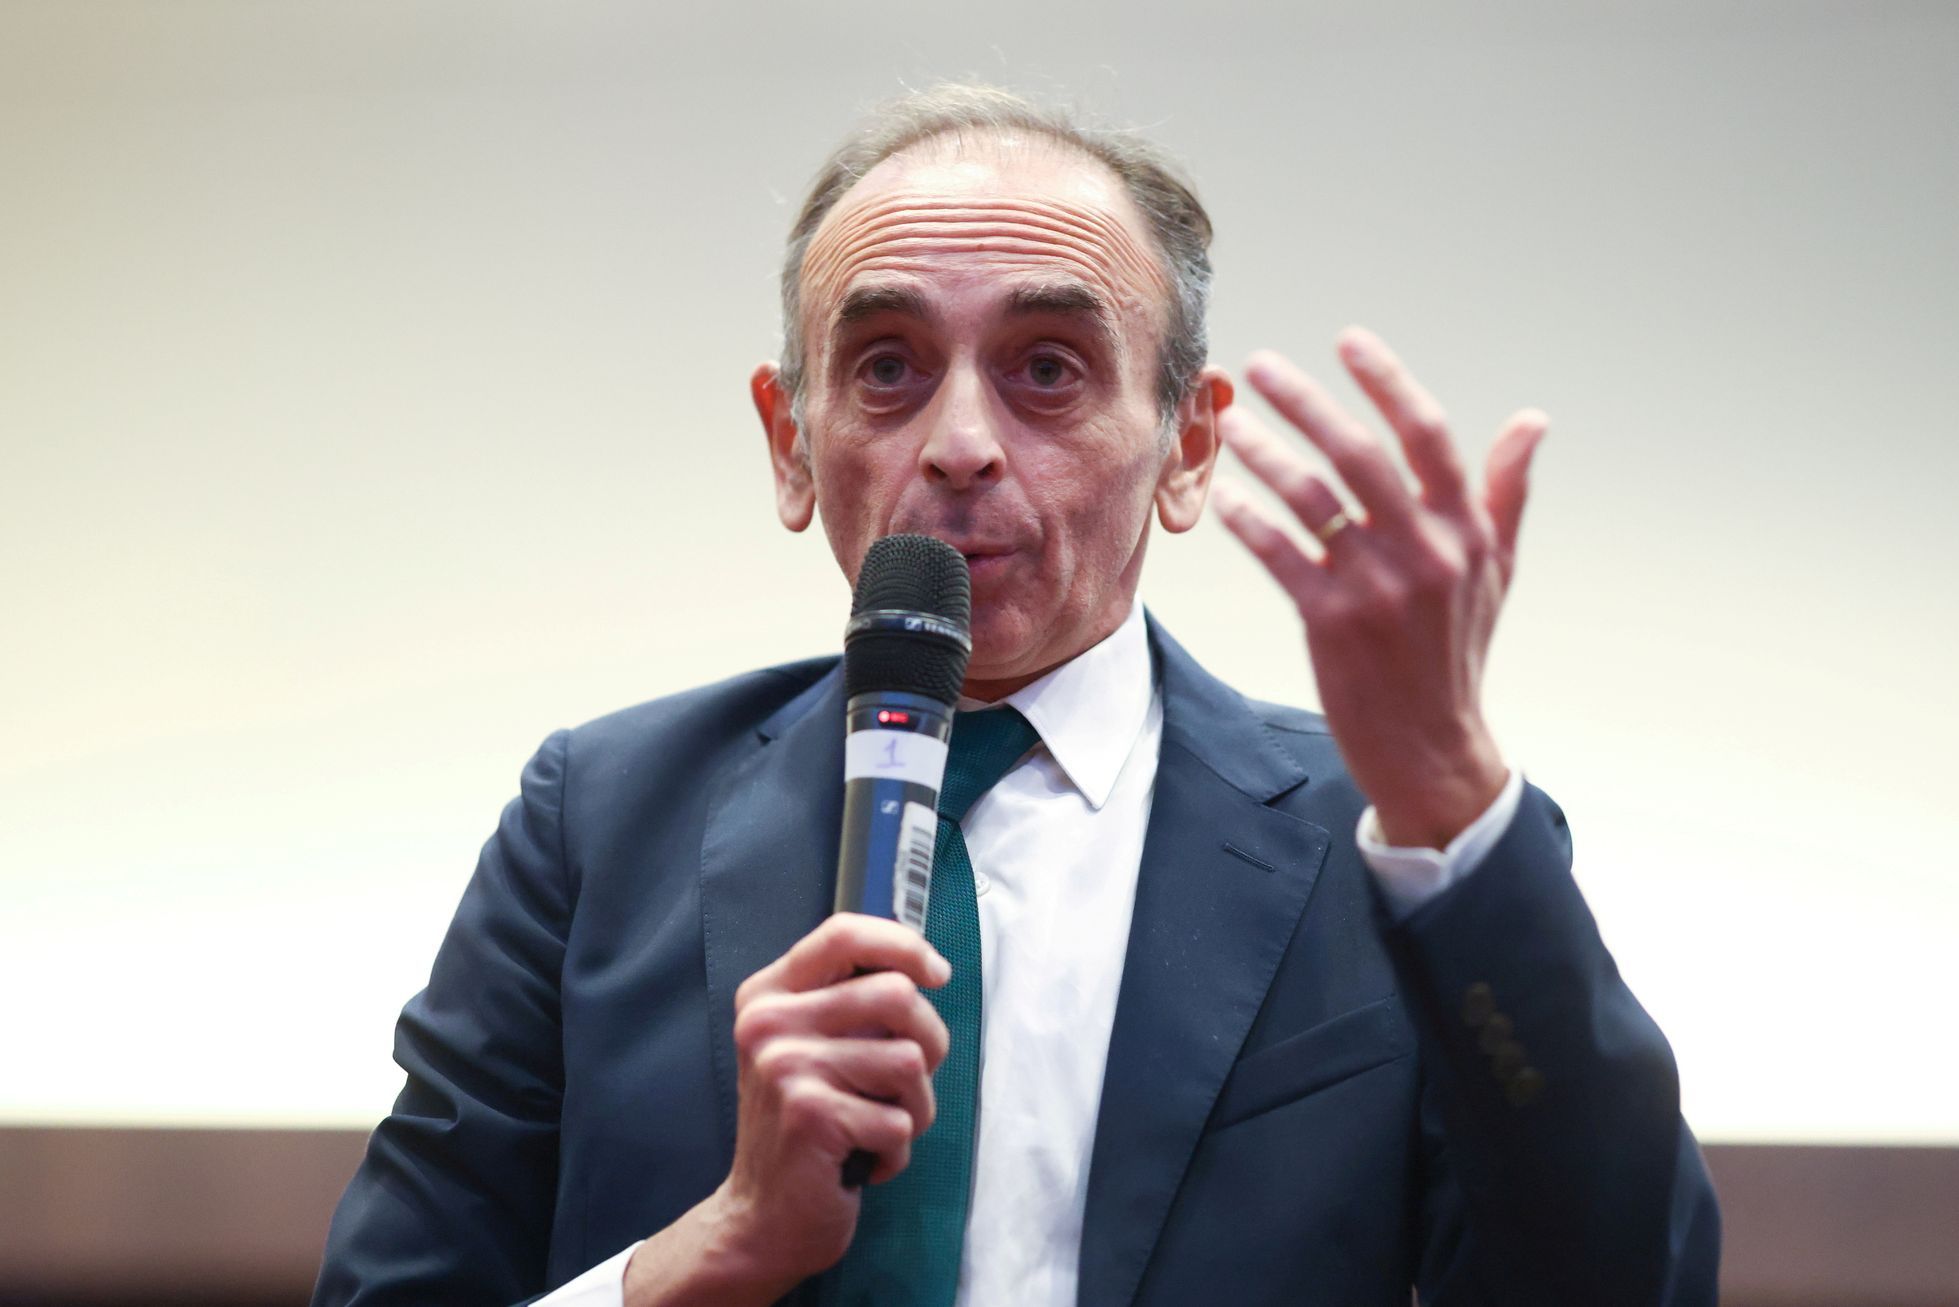 Le candidat présidentiel français Zemmour condamné pour des propos sur les migrants